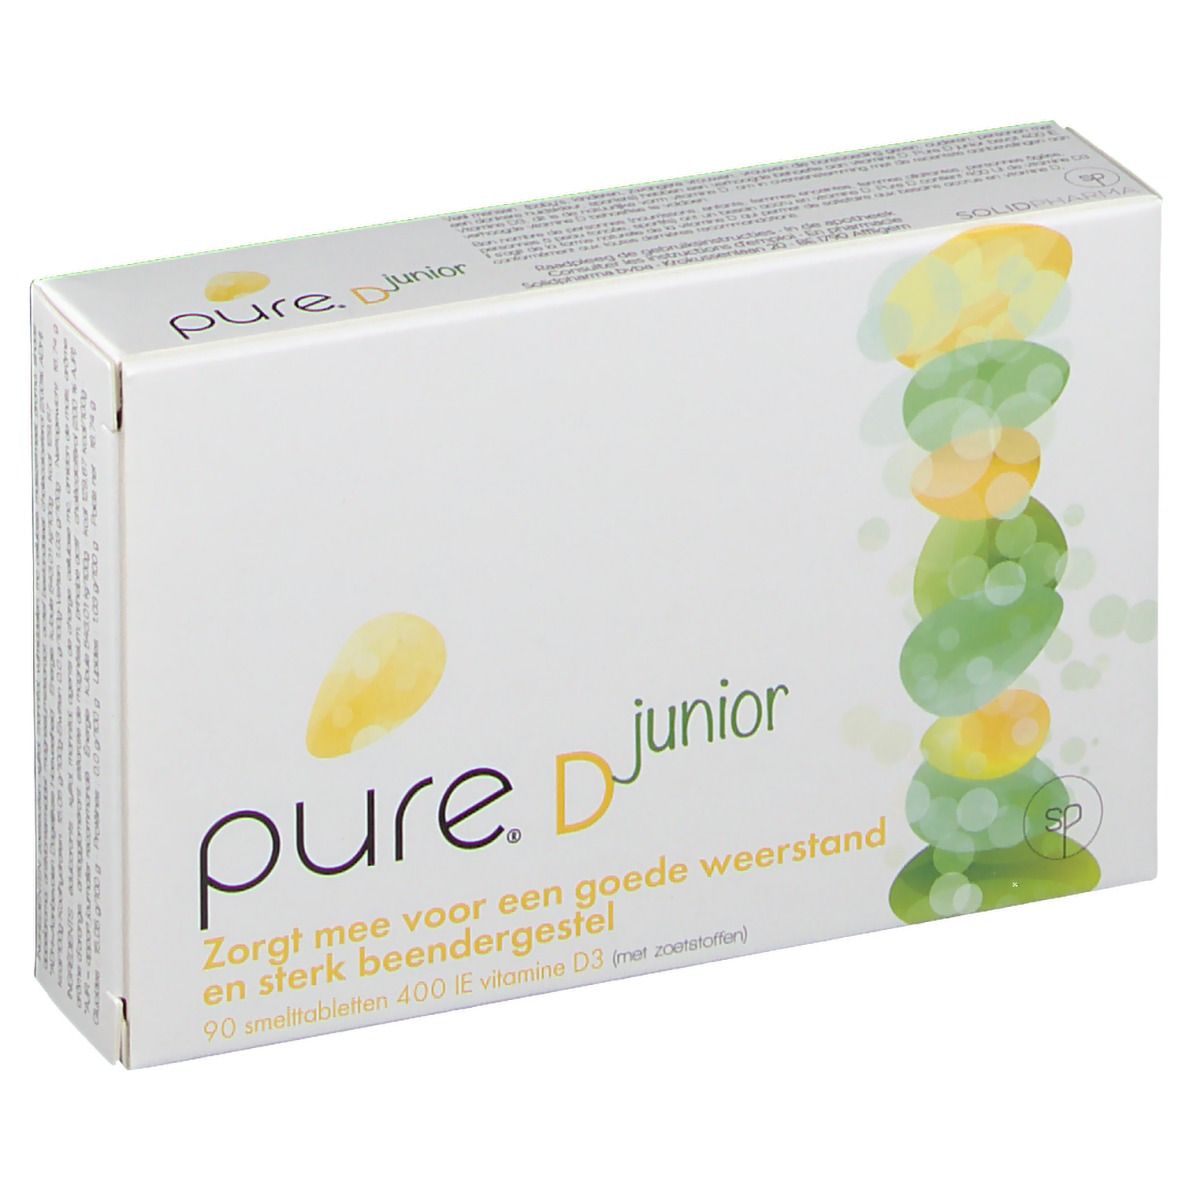 Pure® D Junior